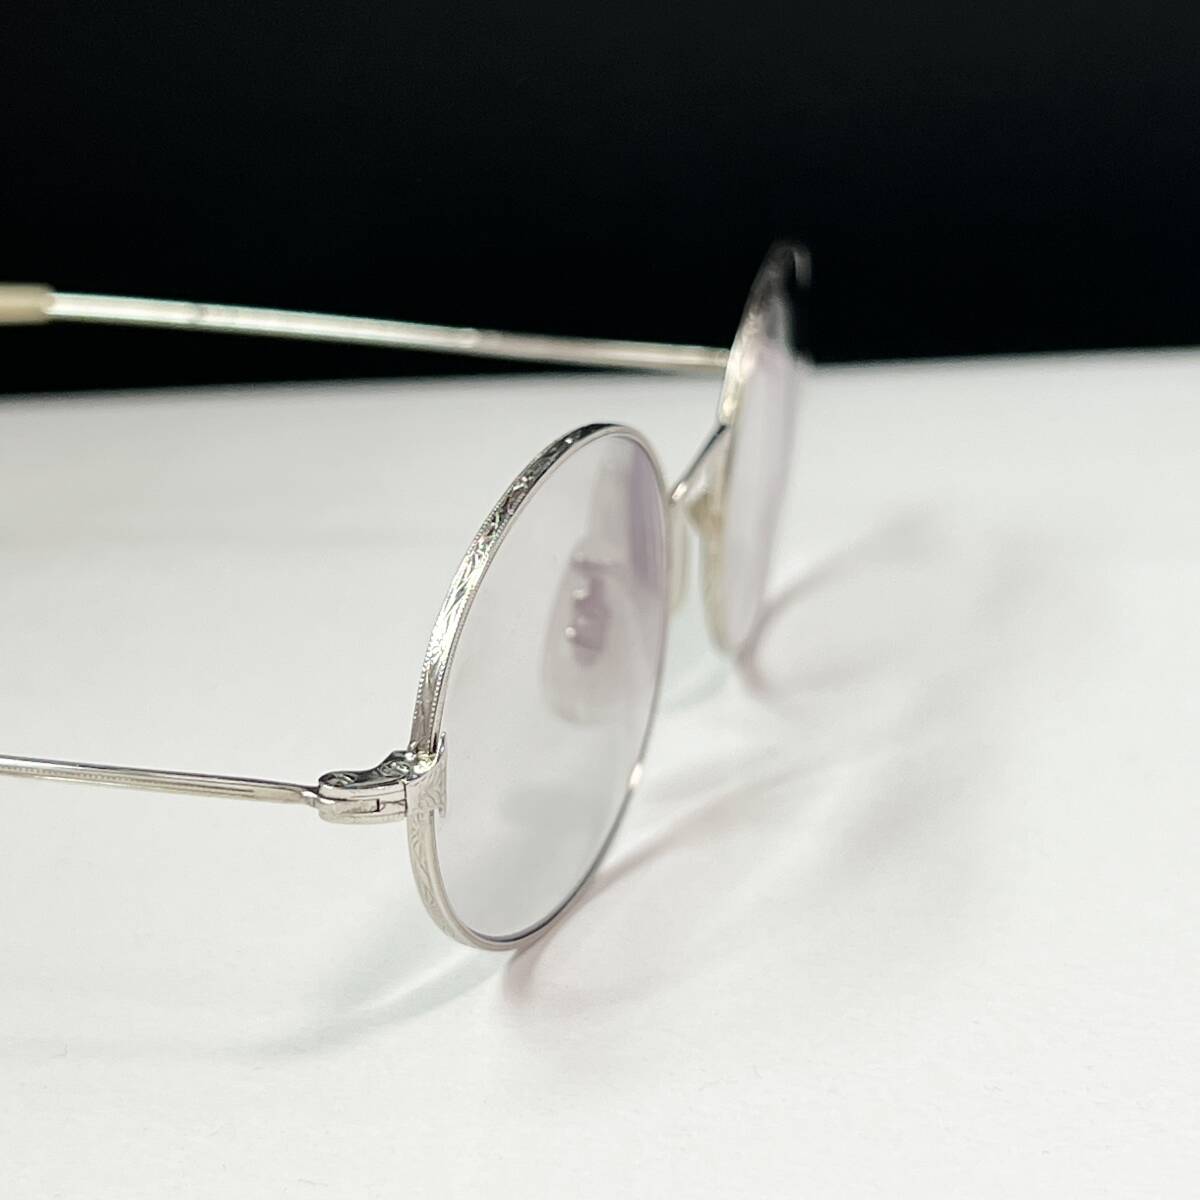 ◆ヴィンテージ 彫金デザイン 眼鏡フレーム メガネ オーバル ラウンド メーカー不明品 シルバー